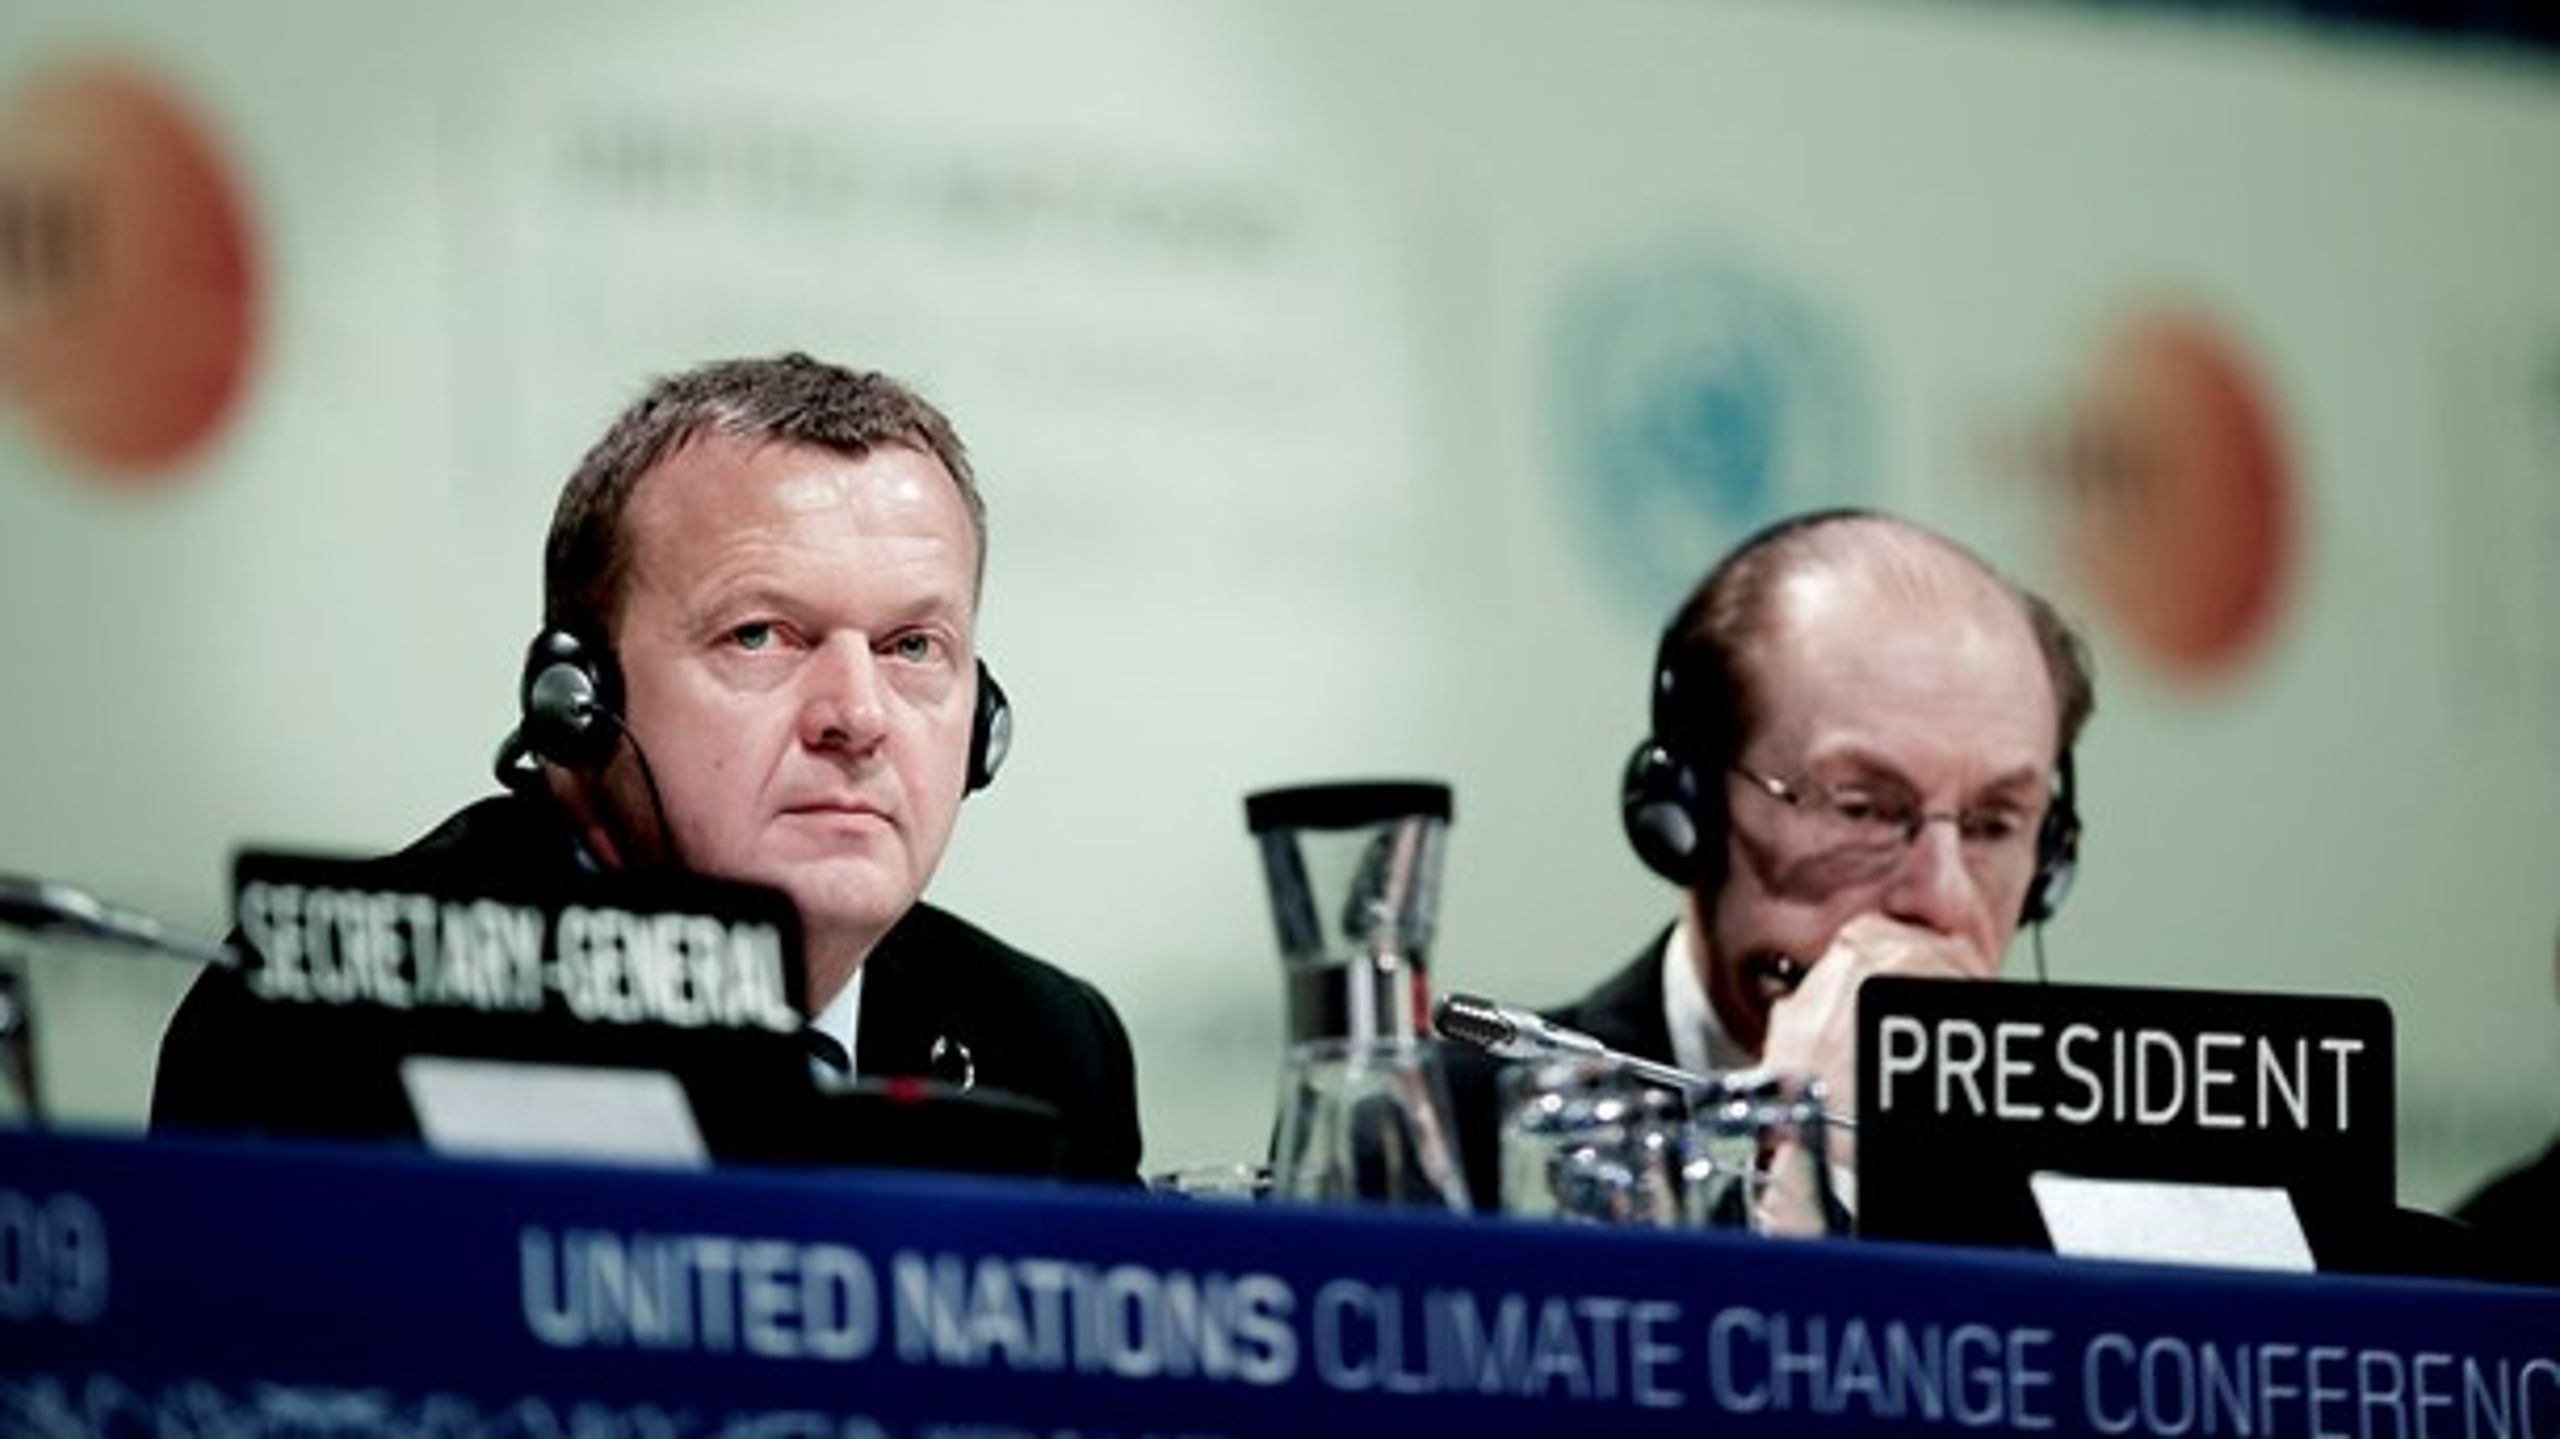 COP15-aftalen blev vedtaget i København i 2009.&nbsp;